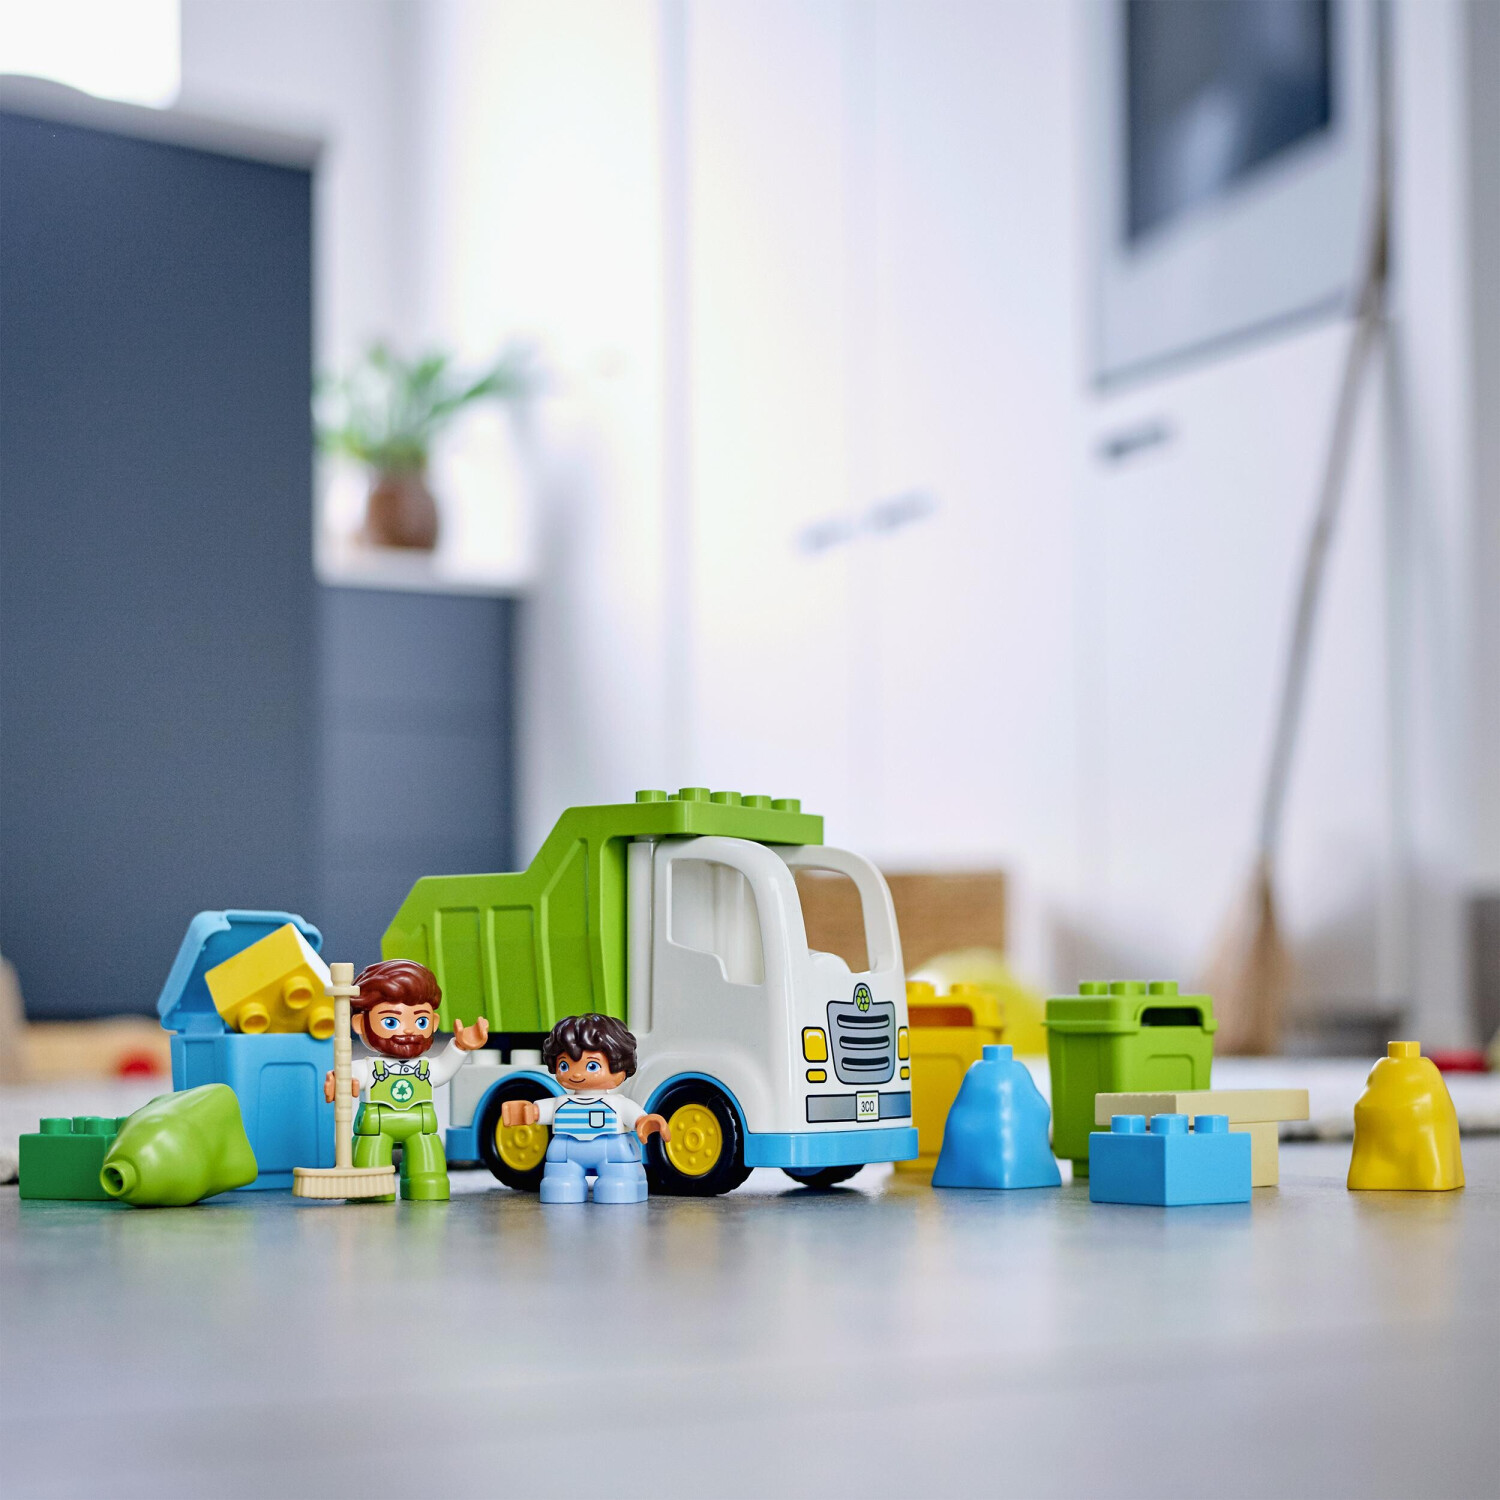 Lego Duplo Le camion poubelle et le tri sélectif, 10945, pour enfants,  jouets, bébés, robustes, durs, sûrs, garçons, filles, blocs, pièces,  originales, licence officielle, nouvelles briques, cadeau - AliExpress